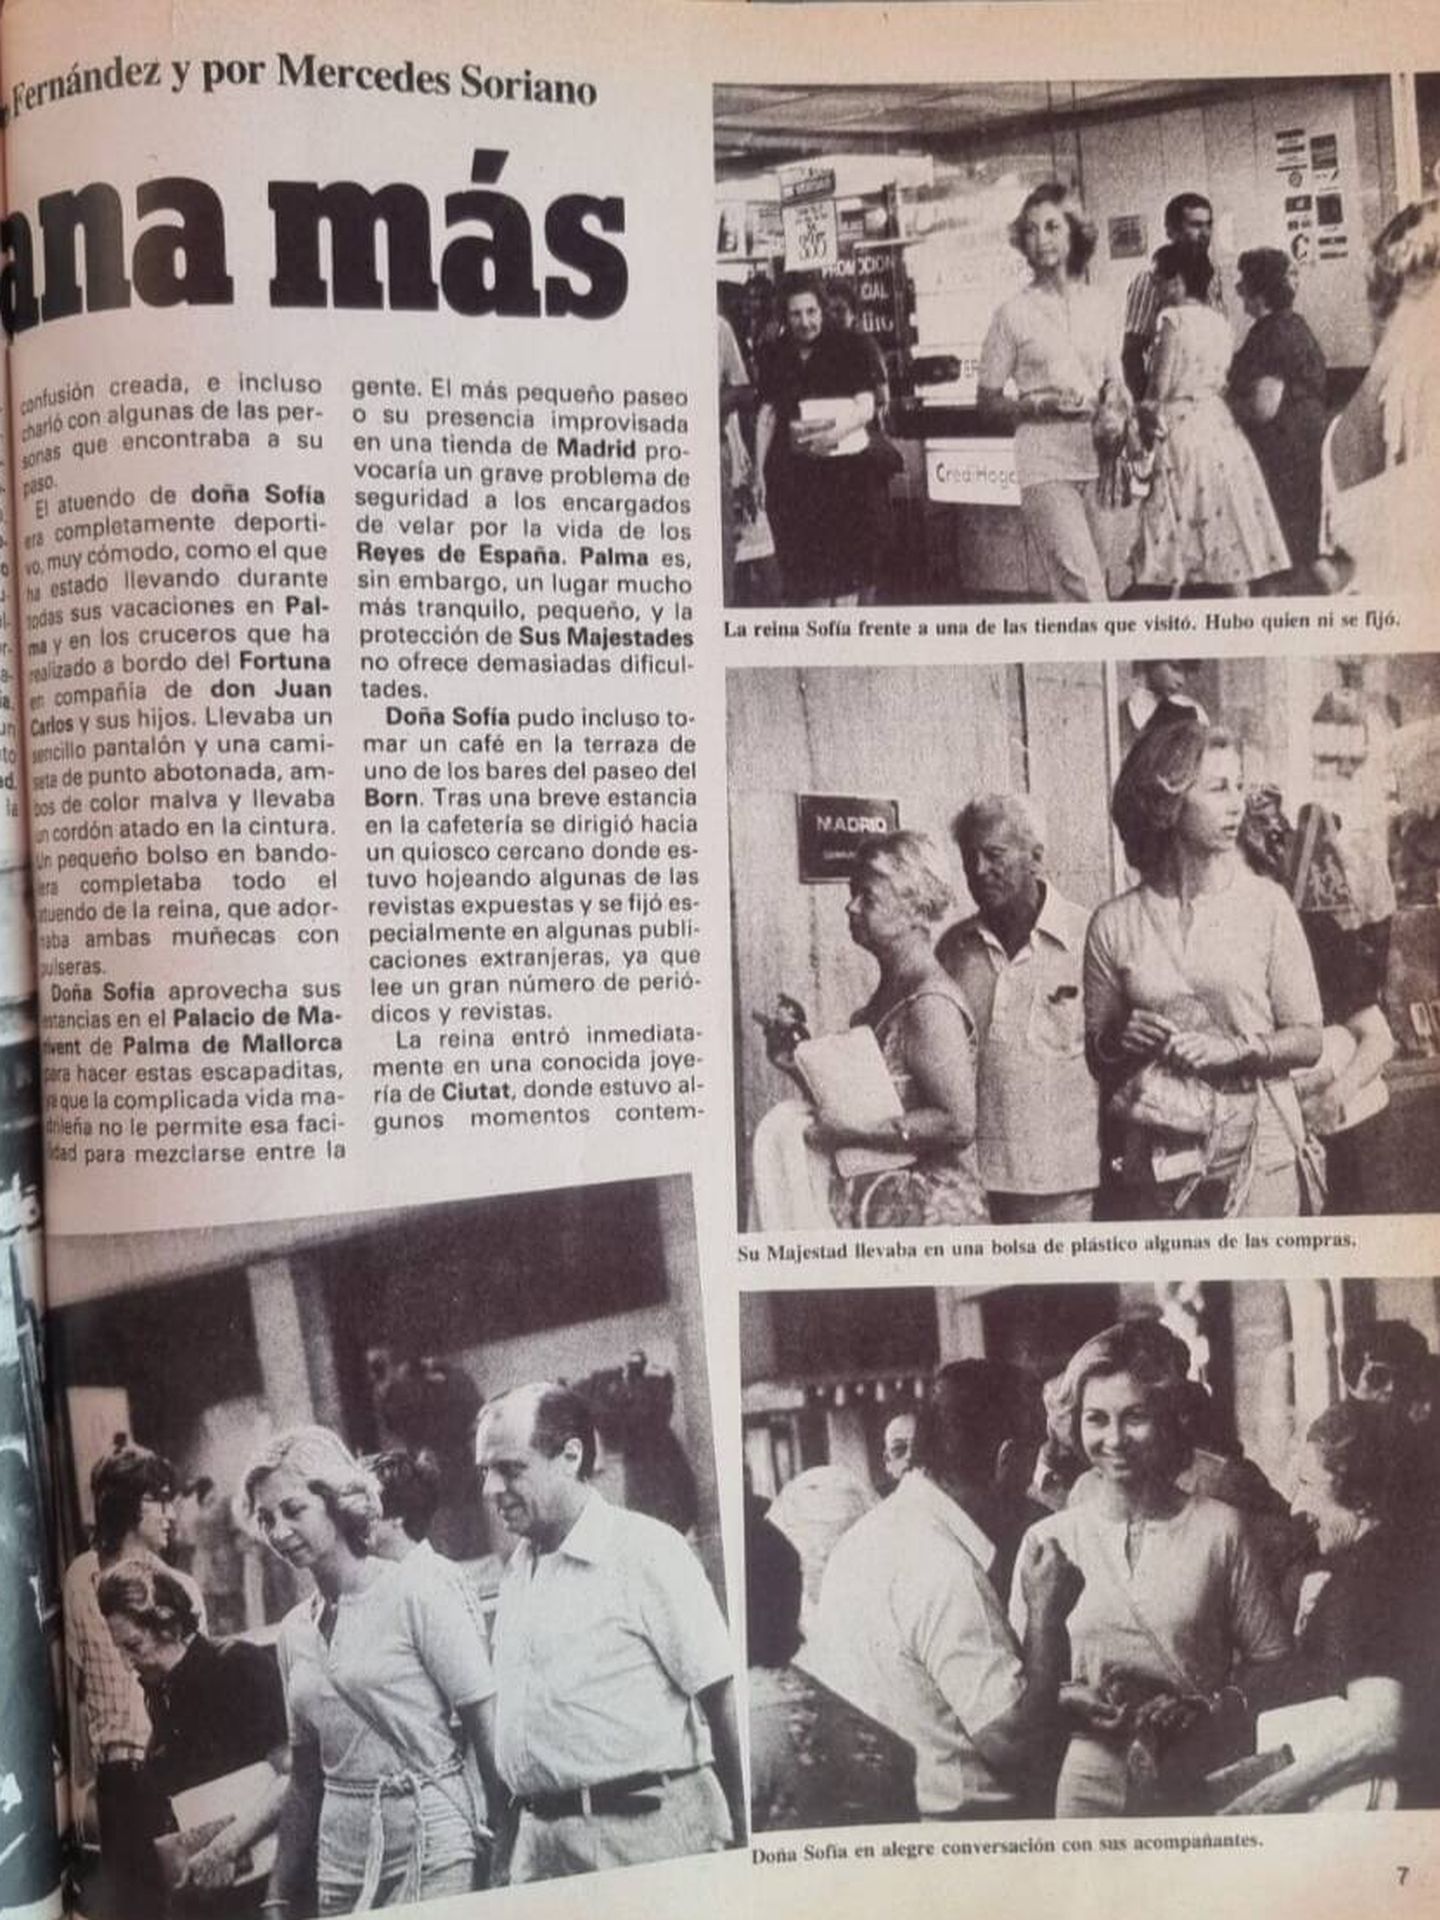 Imagen del reportaje de la revista 'Tiempo' a la reina Sofía en 1988. (Paloma Barrientos)